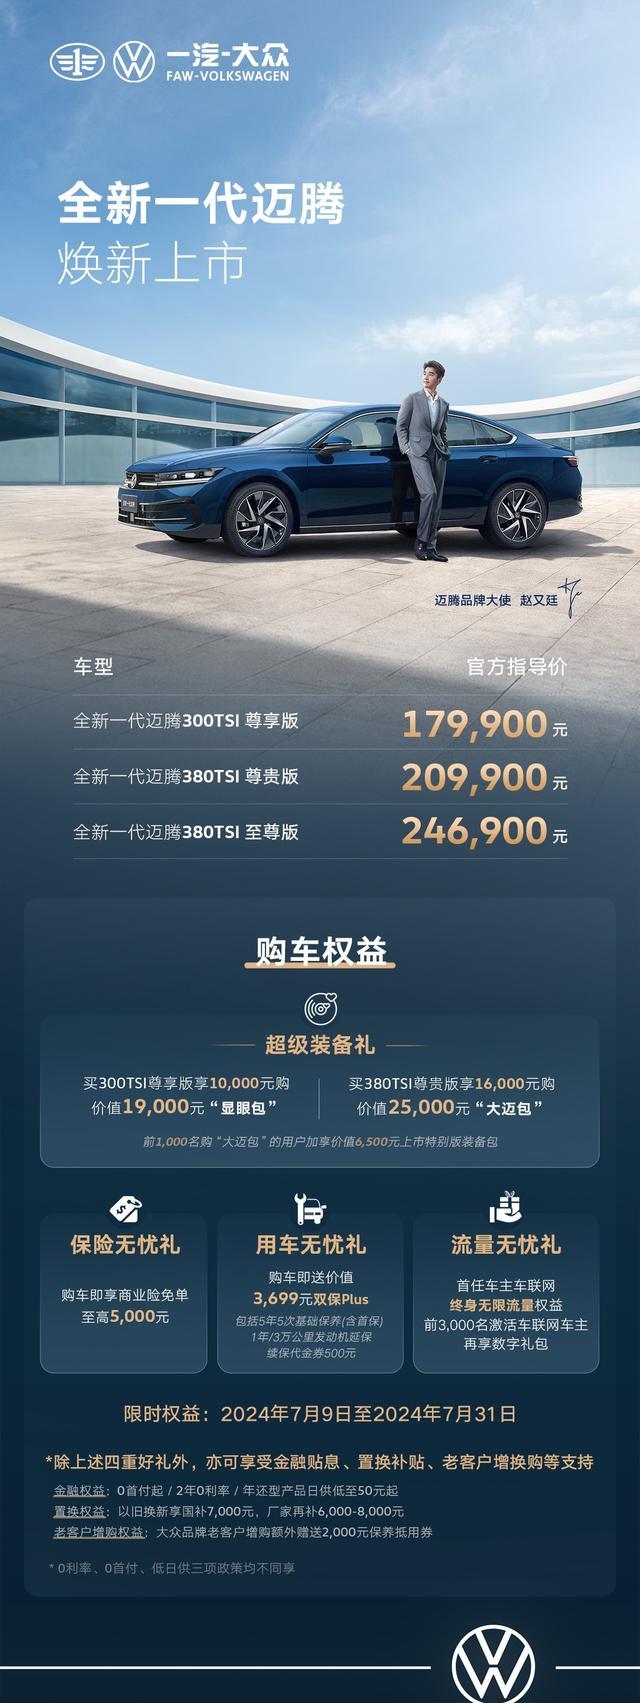 全新一代迈腾上市 售价17.99万起 搭载大疆智能驾驶